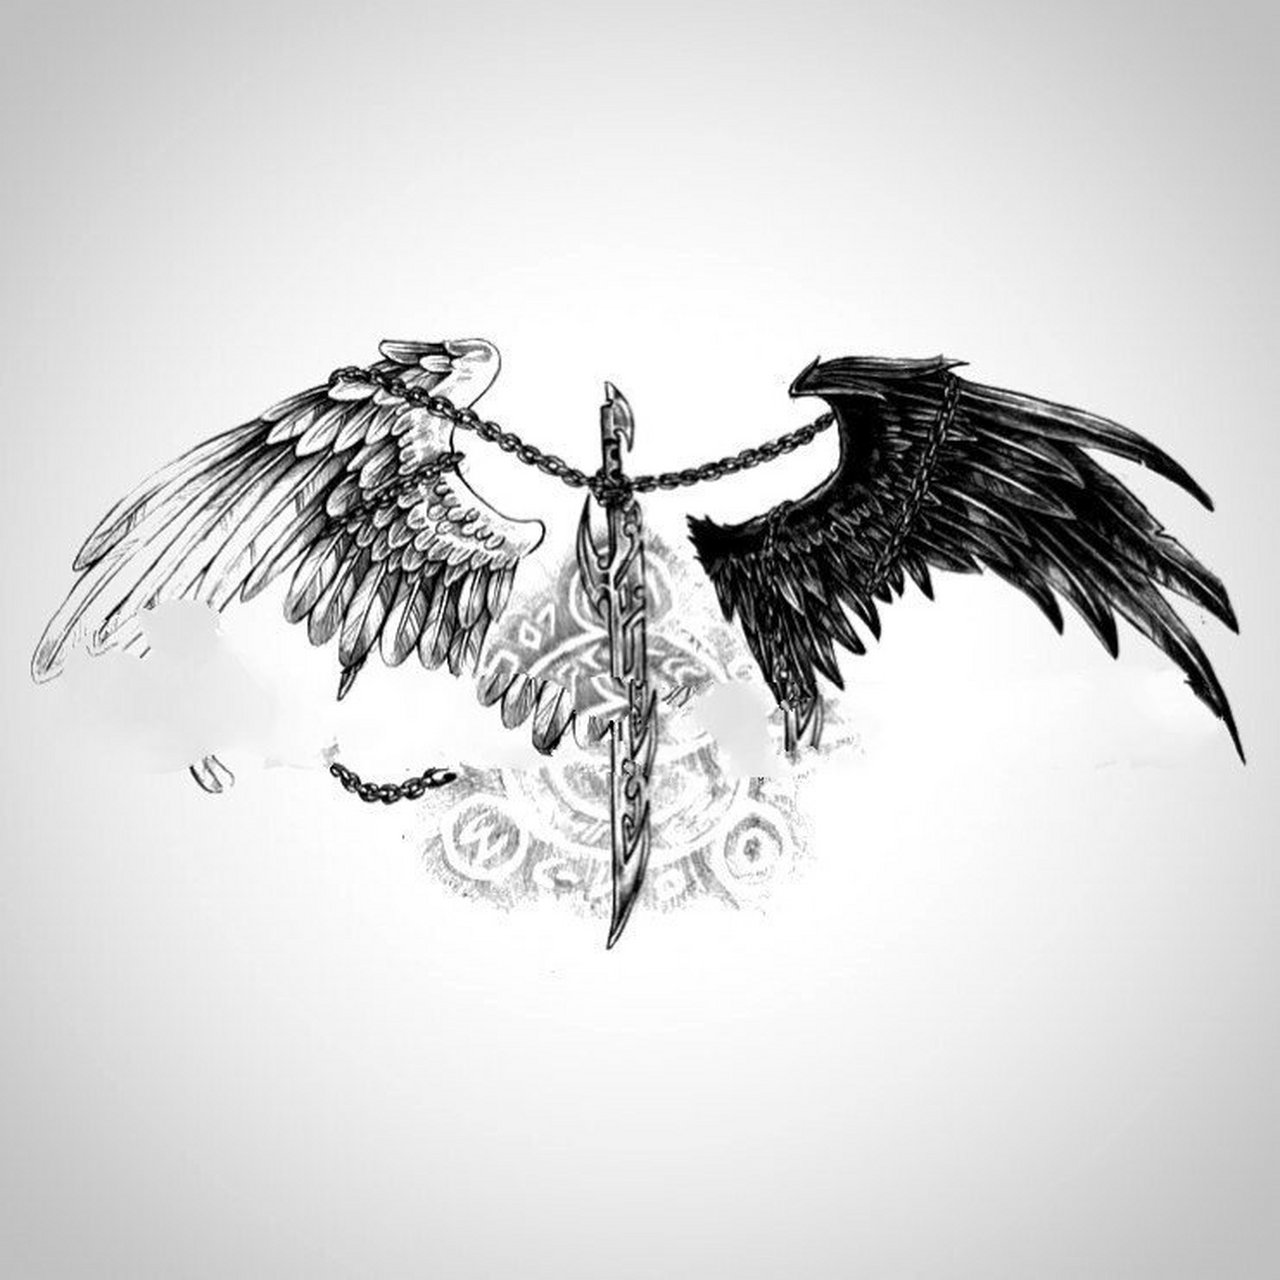 翅膀纹身丨暗黑翅膀 纹身后背纹身 翅膀后背纹身素材